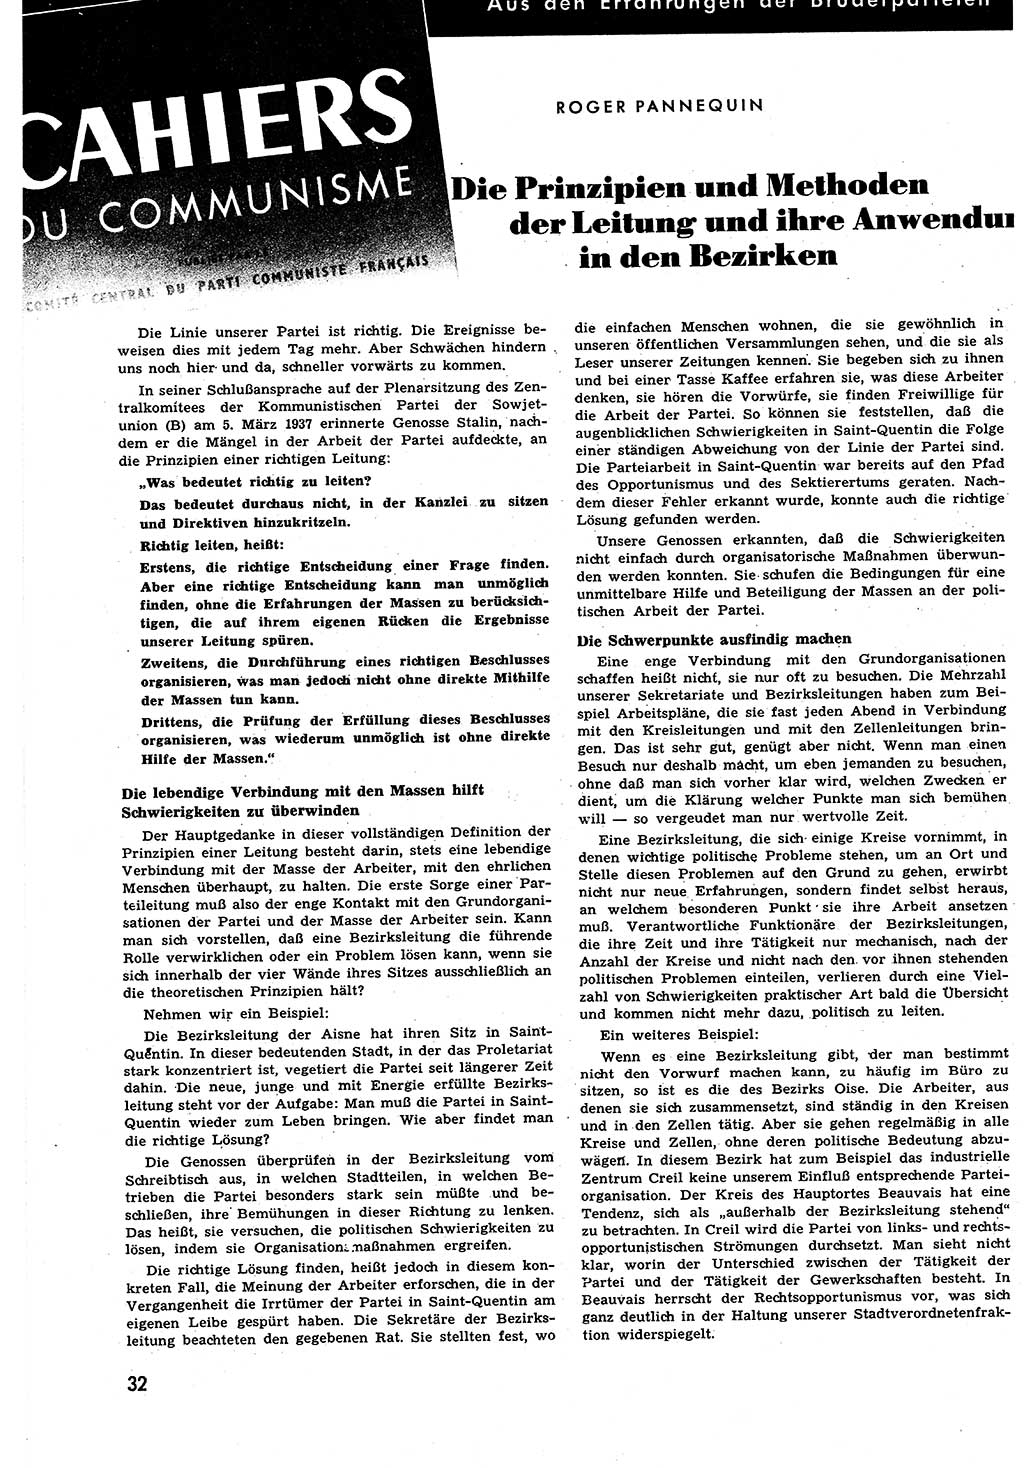 Neuer Weg (NW), Halbmonatsschrift für aktuelle Fragen der Arbeiterbewegung [Zentralkomitee (ZK) Sozialistische Einheitspartei Deutschlands (SED)], 6. Jahrgang [Deutsche Demokratische Republik (DDR)] 1951, Heft 11/32 (NW ZK SED DDR 1951, H. 11/32)